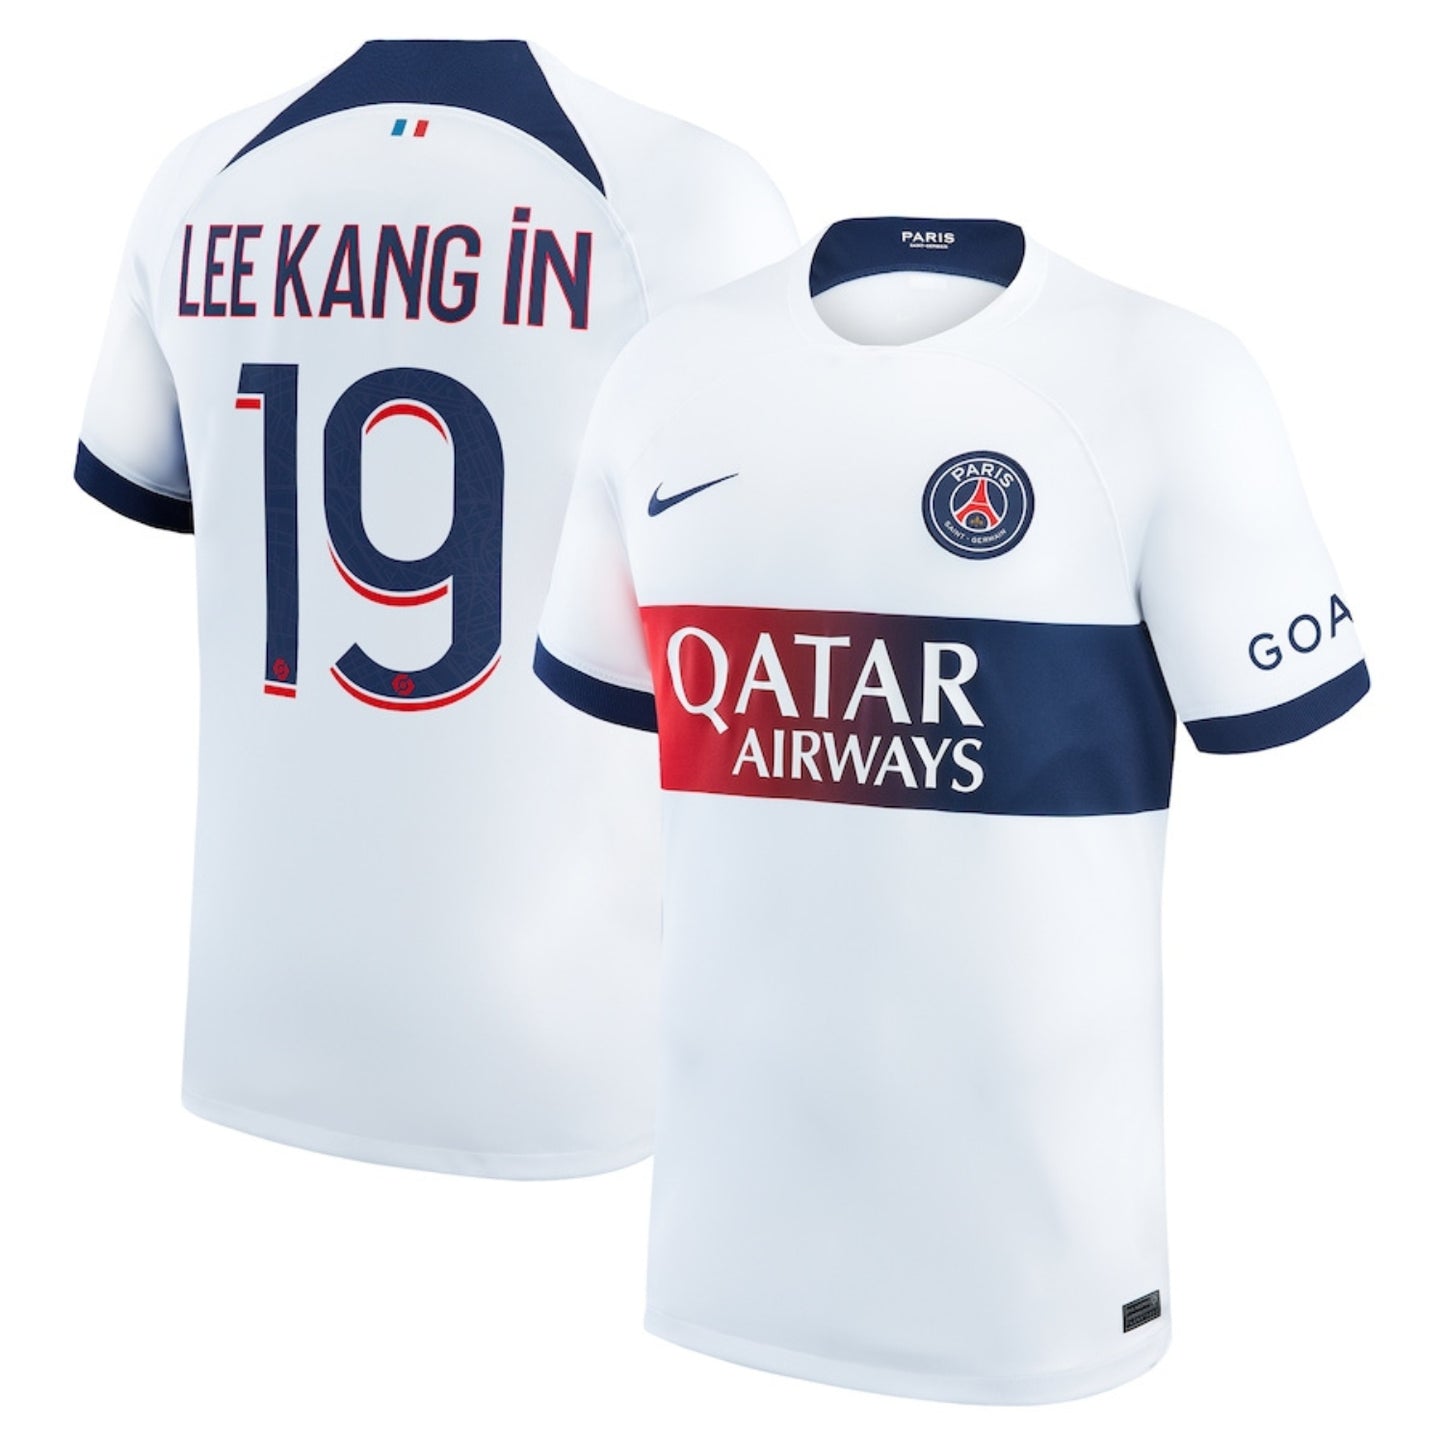 Lee Kang In  Paris Saint-Germain 19 Jersey